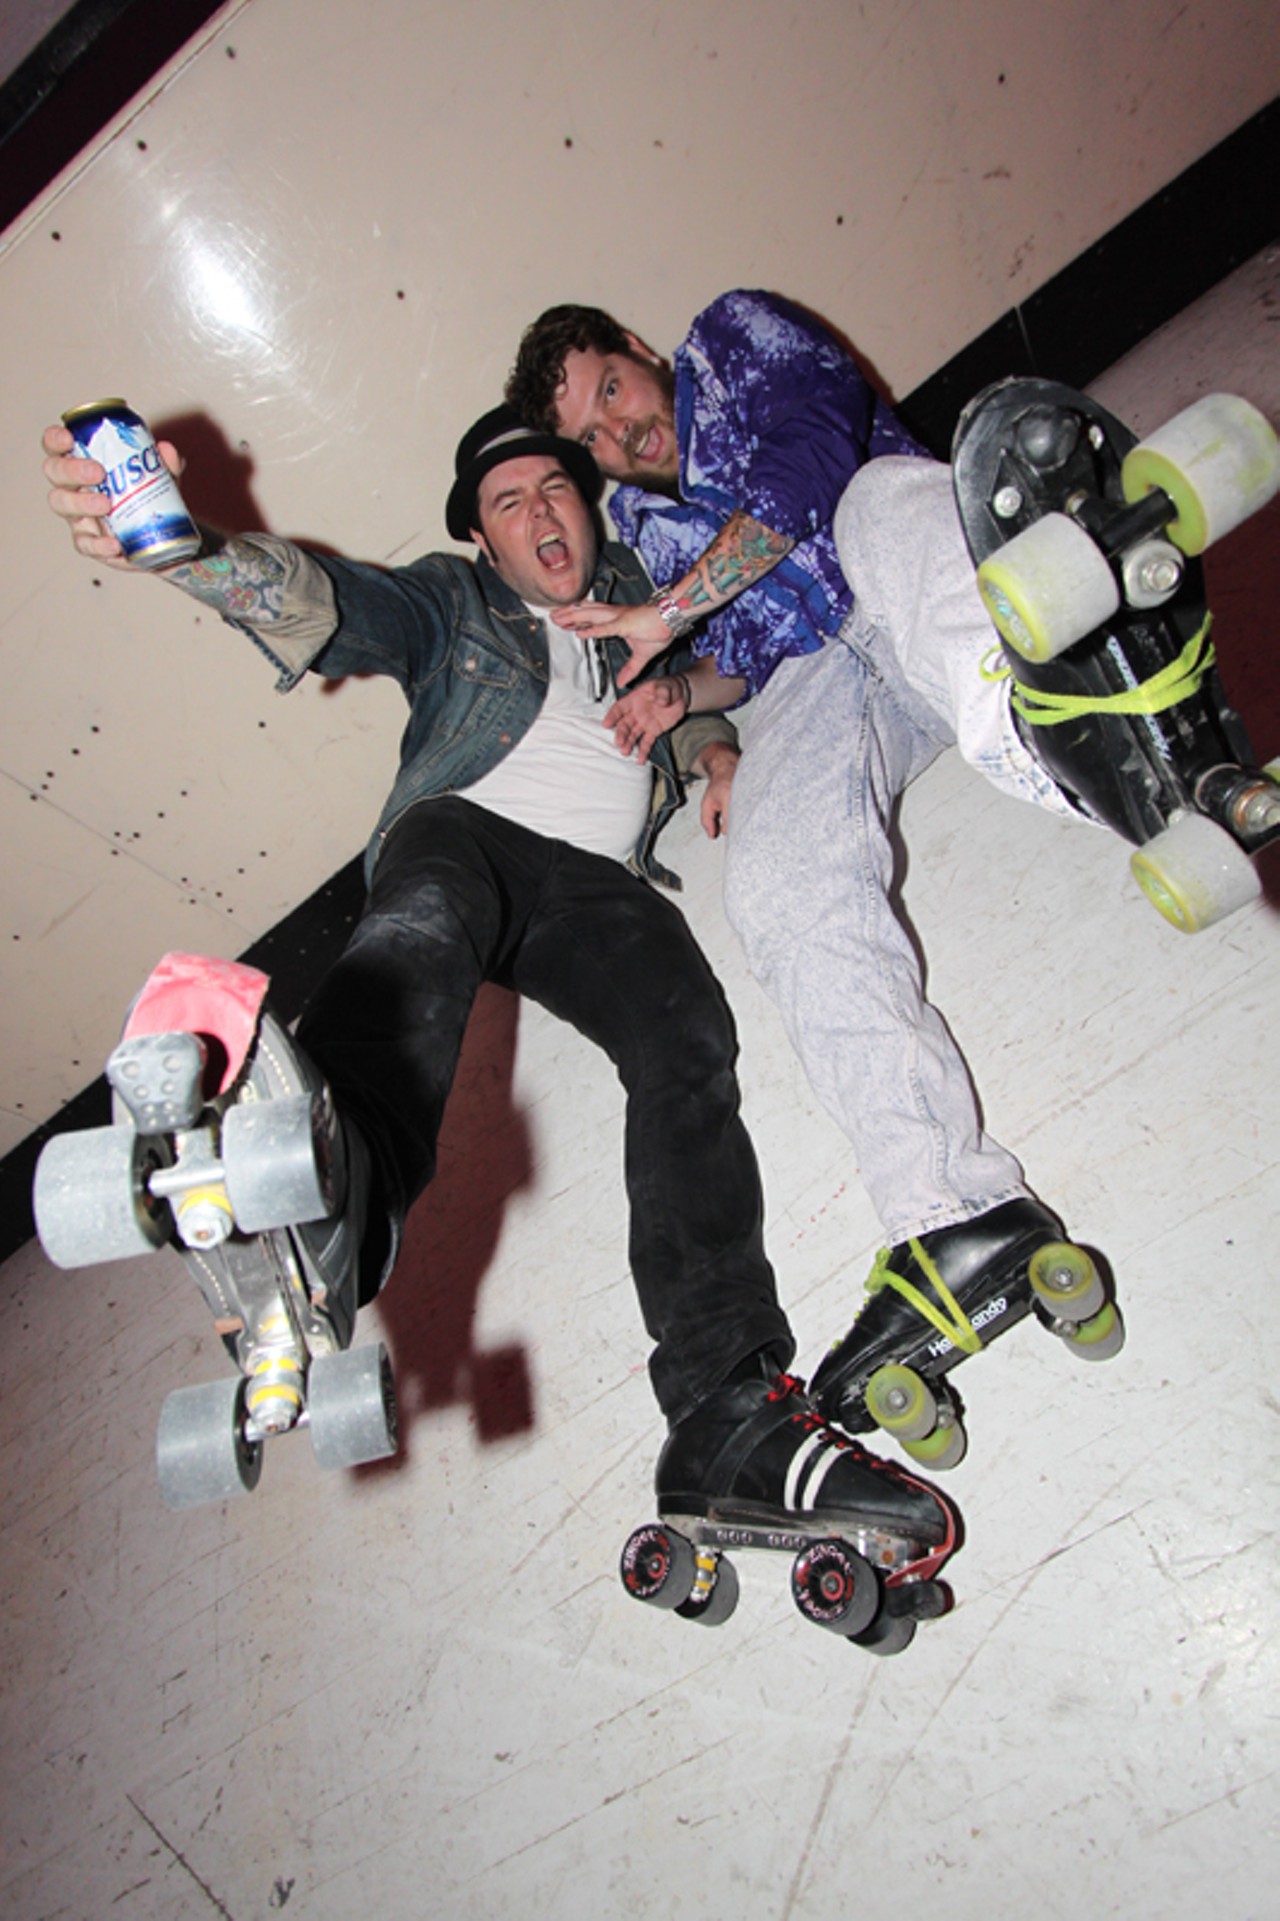 90210 Skate Party at Skatium